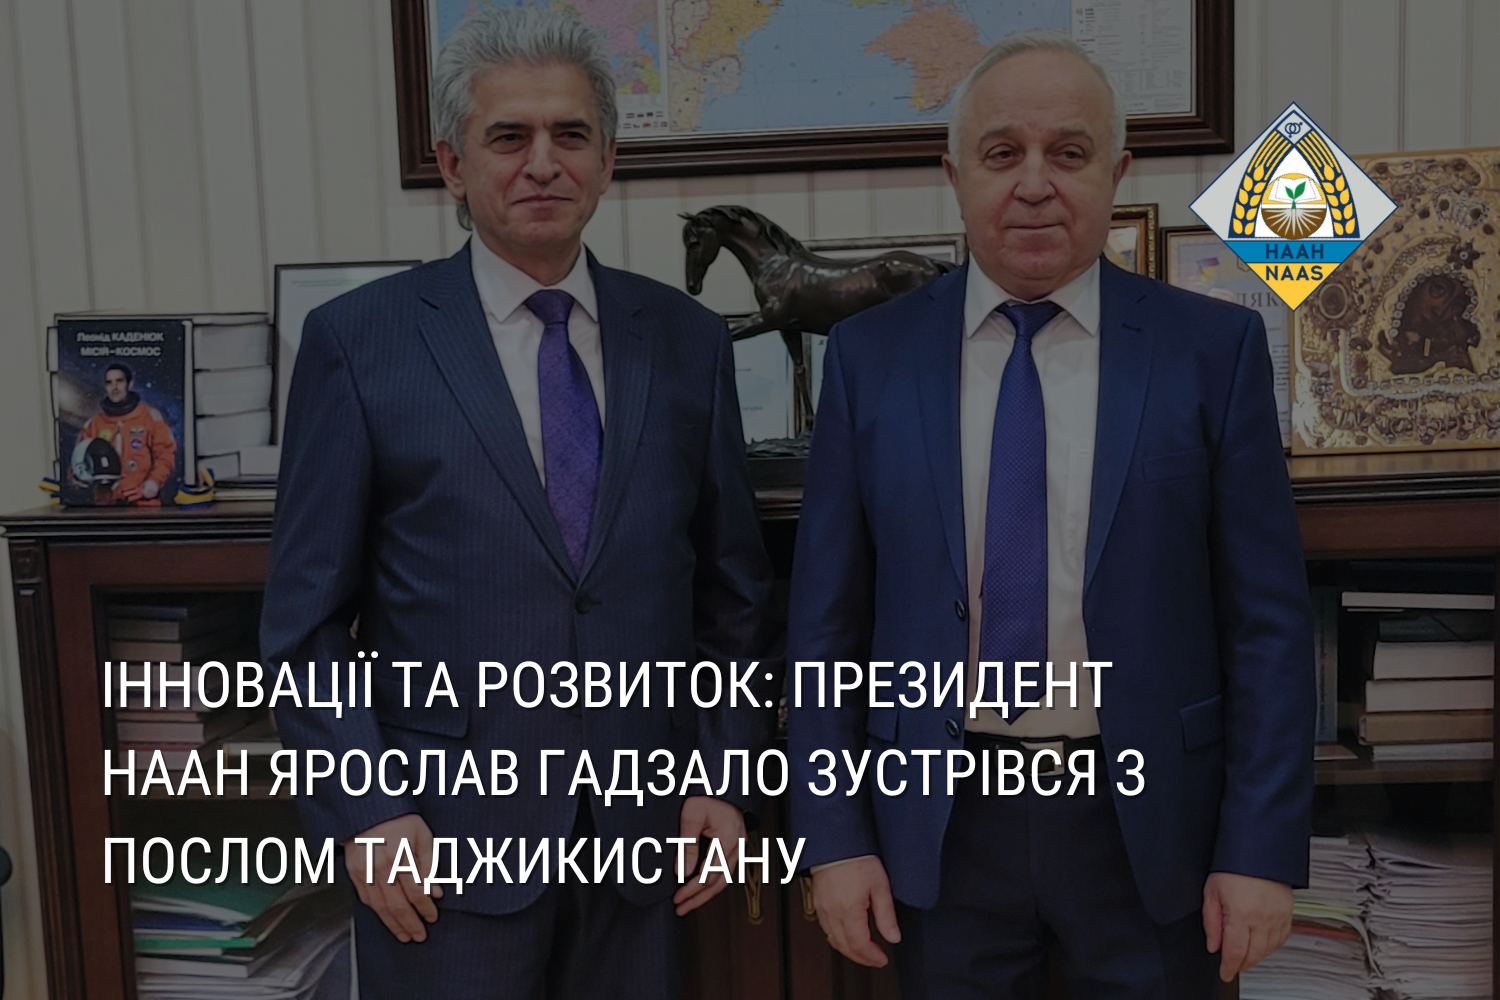 Інновації та розвиток: президент НААН Ярослав Гадзало зустрівся з послом Таджикистану